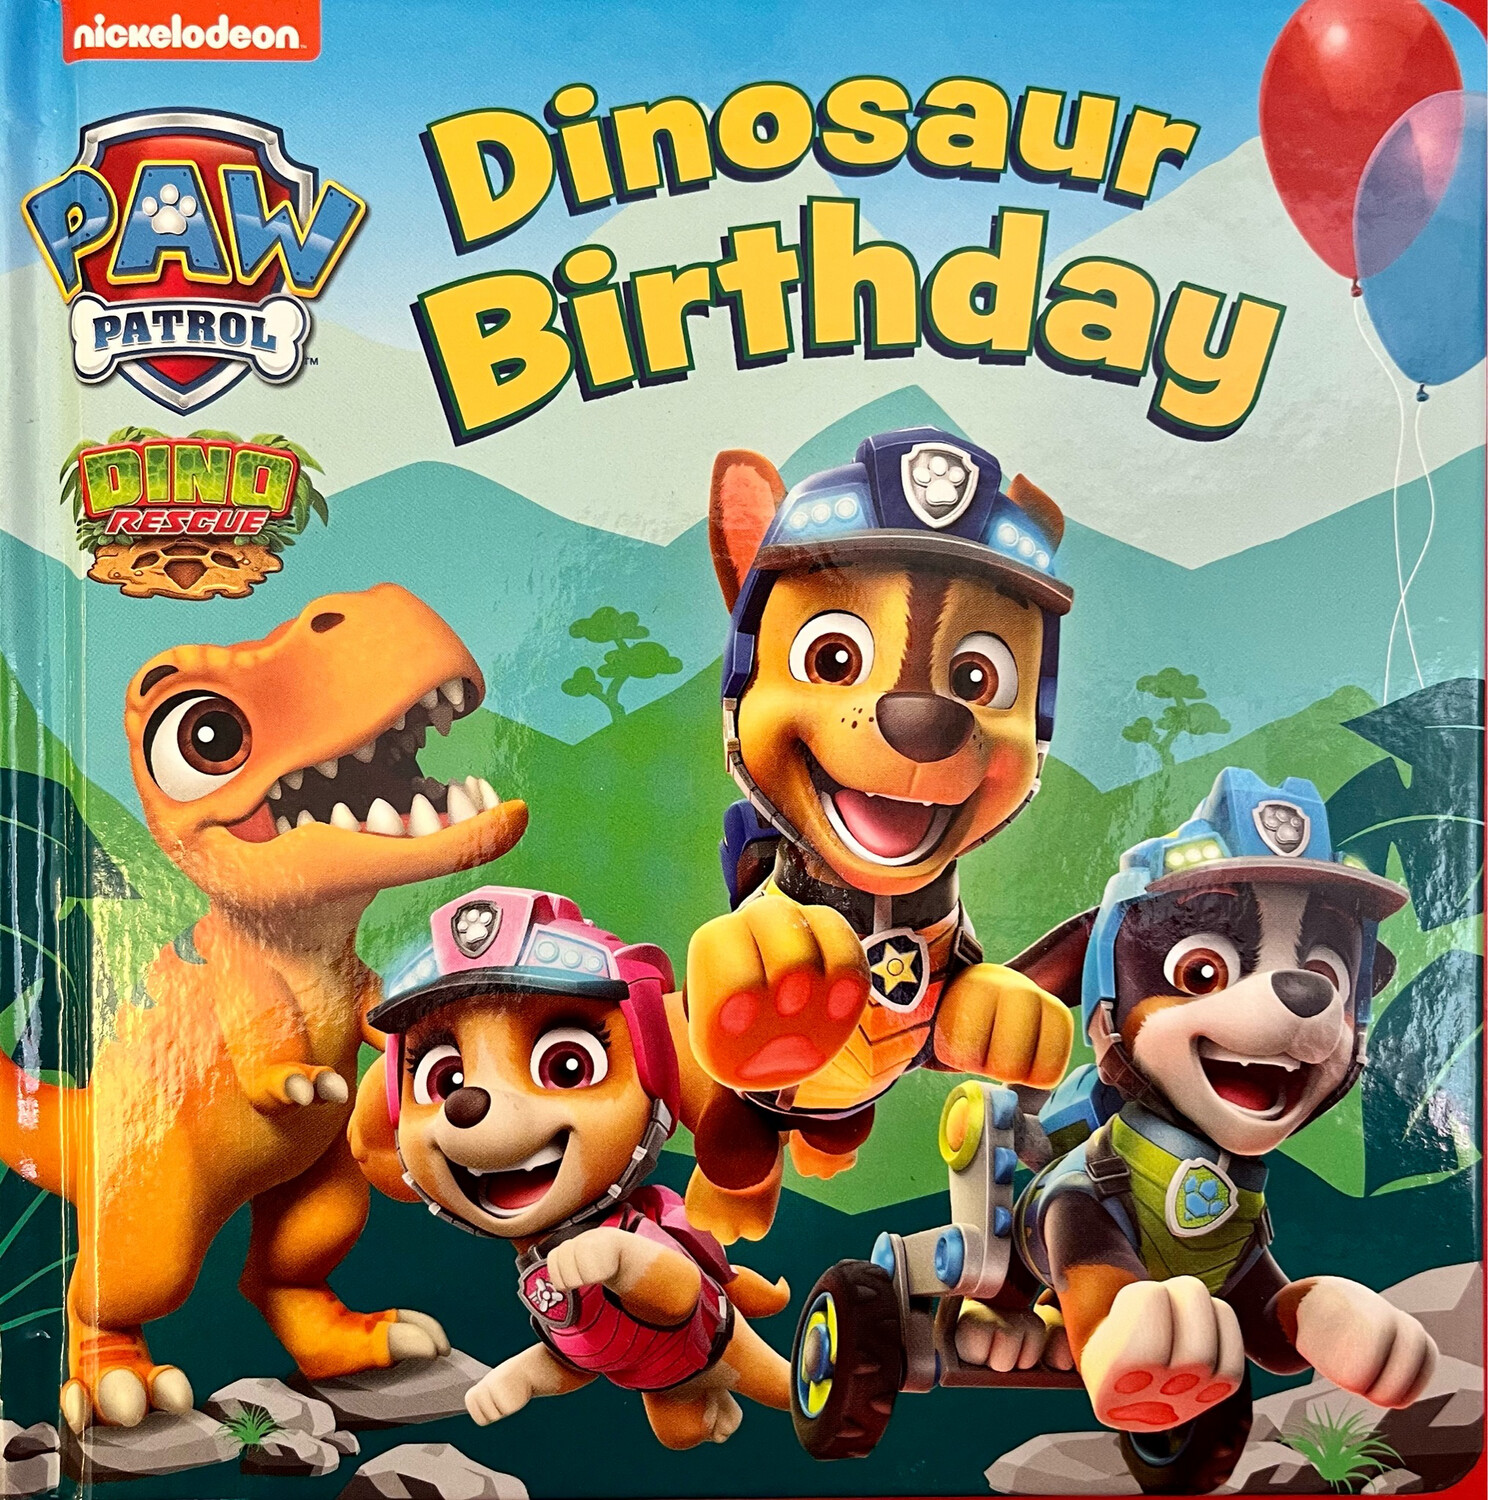 Paw Patrol Dino Rescue: Dinosaur Birthday